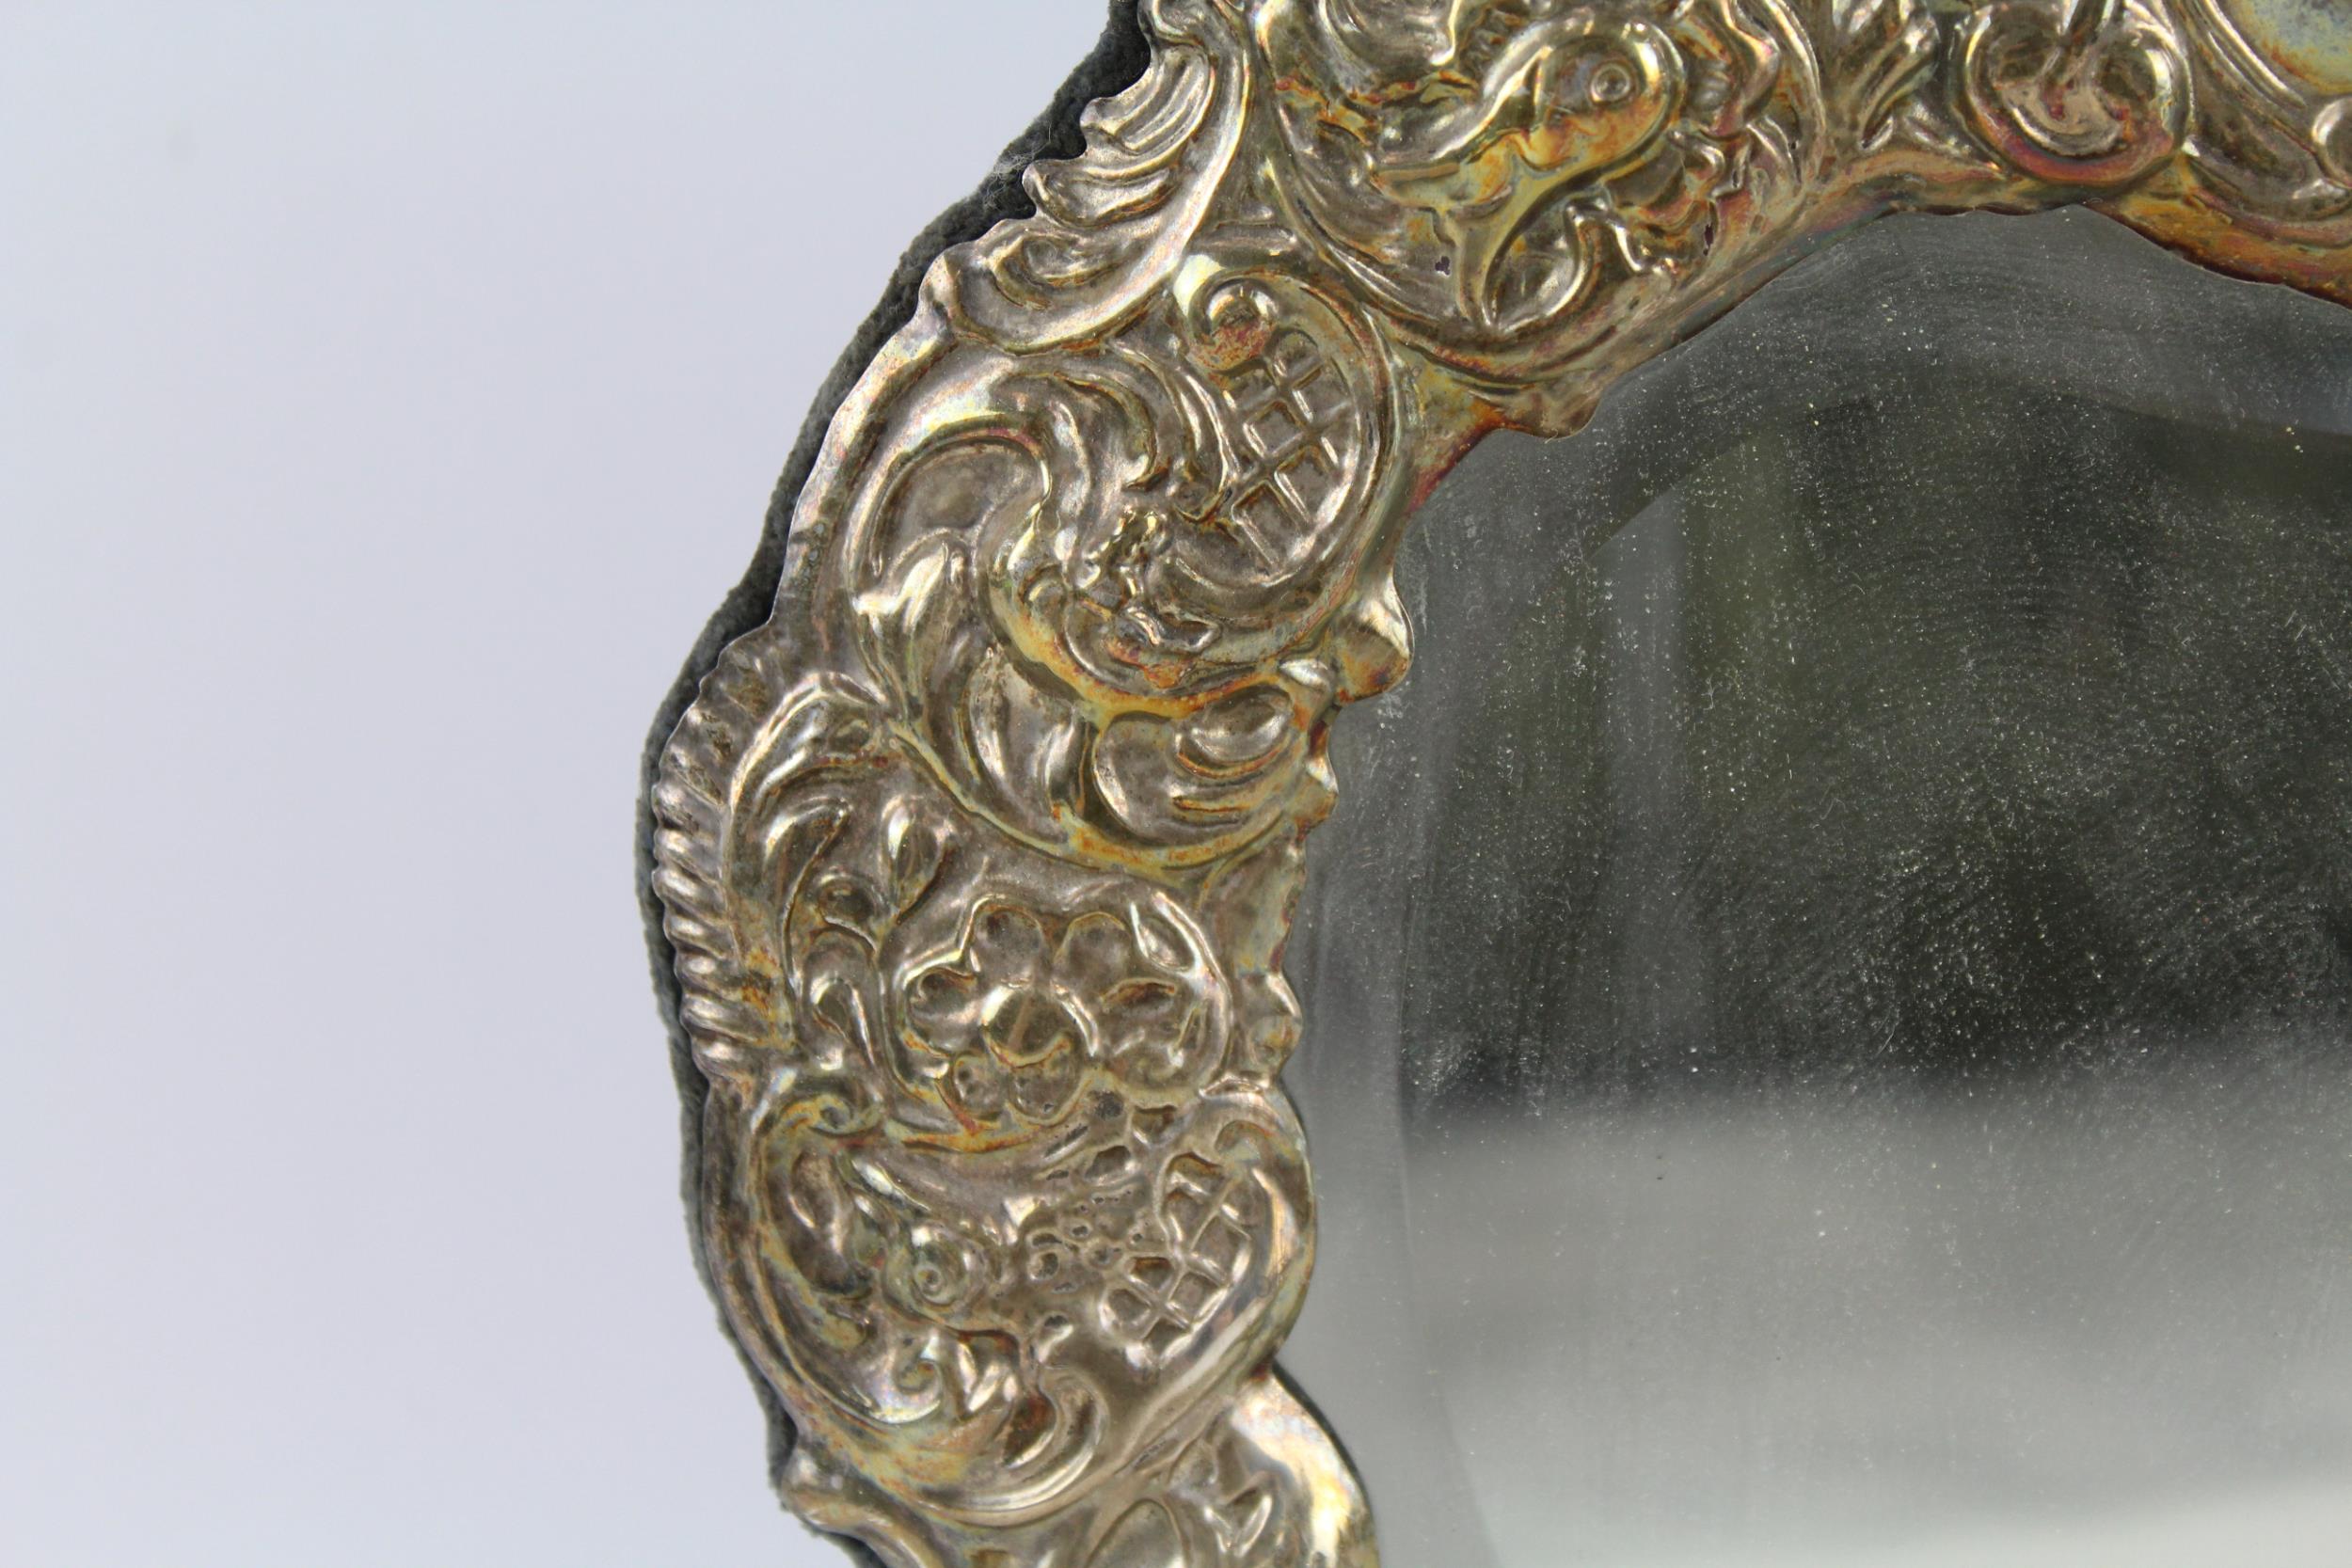 Vintage Hallmarked 1996 Sheffield Sterling Silver Cherub Detailed Mirror (692g) - Maker - Ari D - Image 3 of 7